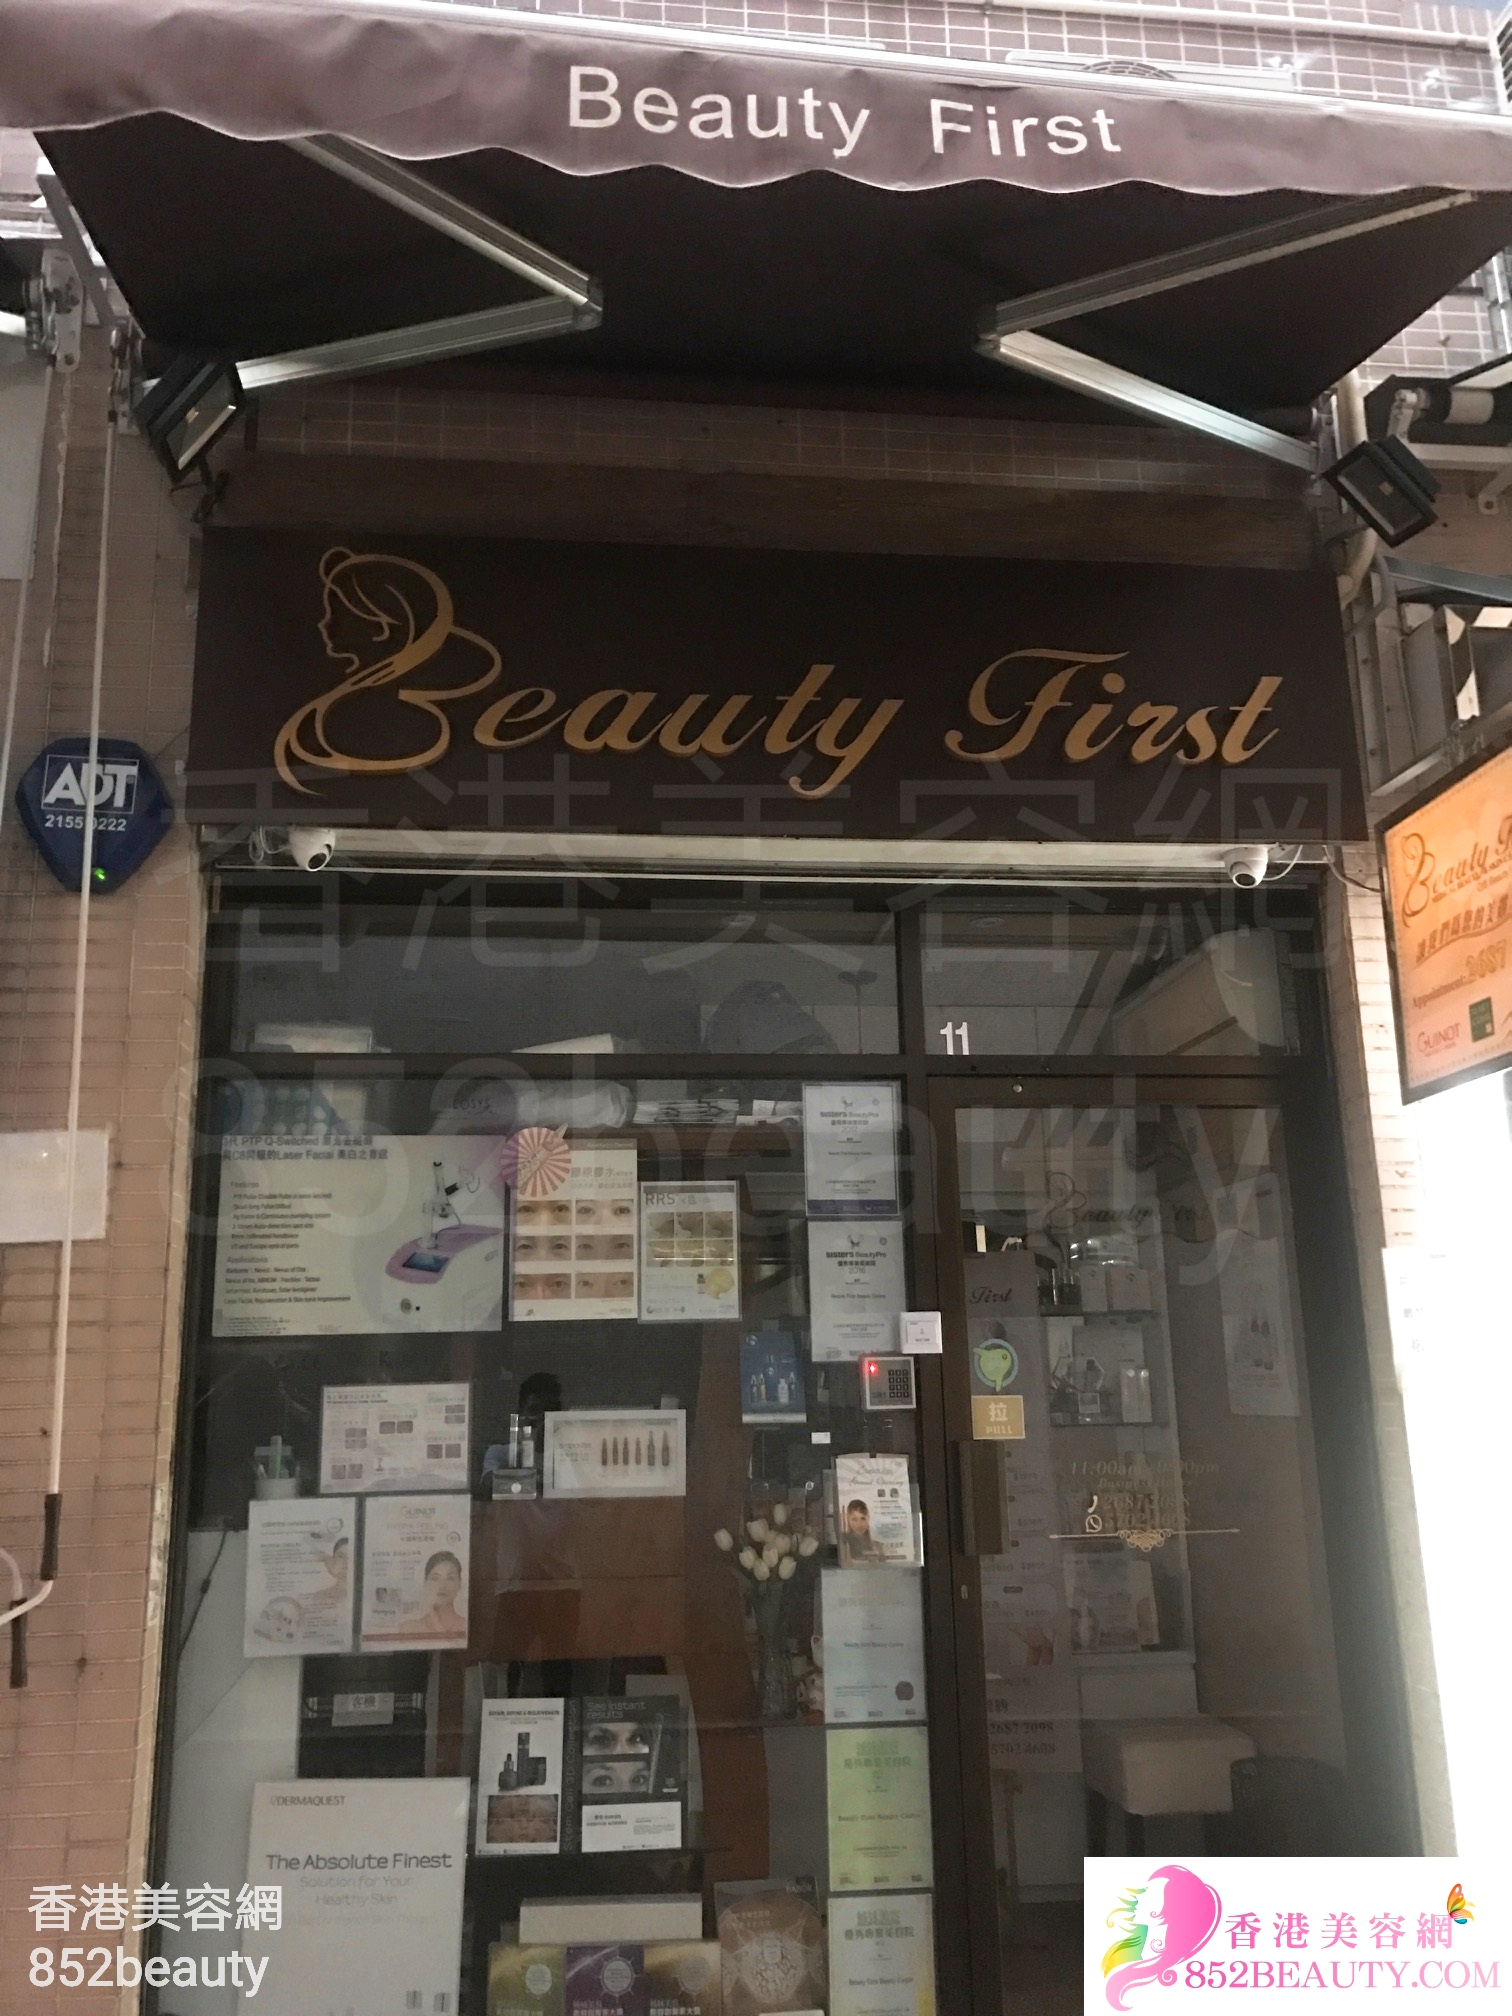 修眉/眼睫毛: Beauty First (嘉豐花園)